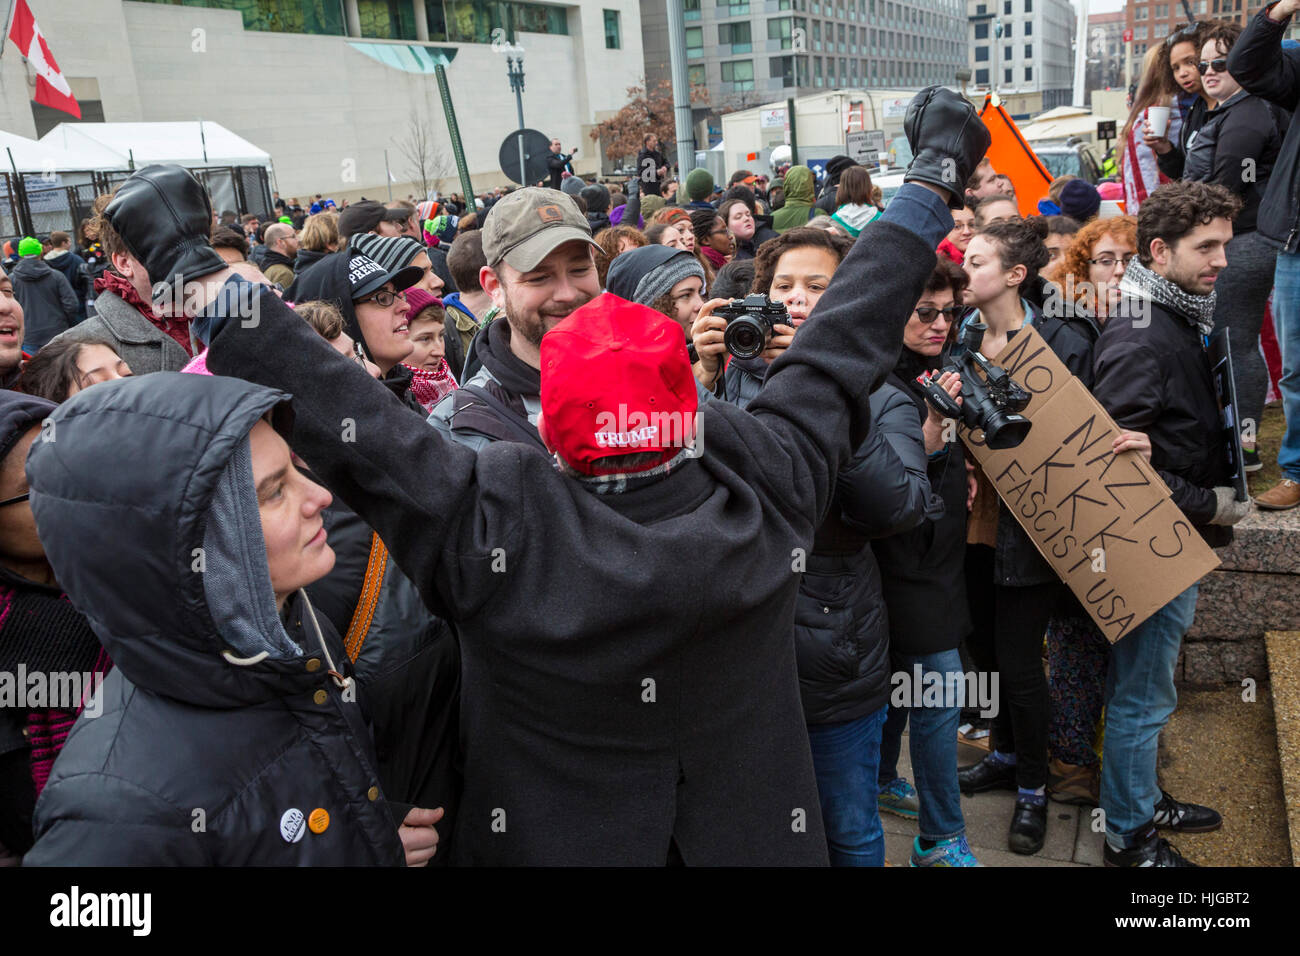 Washington, DC, USA - 20 janvier 2017 - un atout partisan soutient les manifestants lors de l'inauguration du président Donald Trump. Banque D'Images